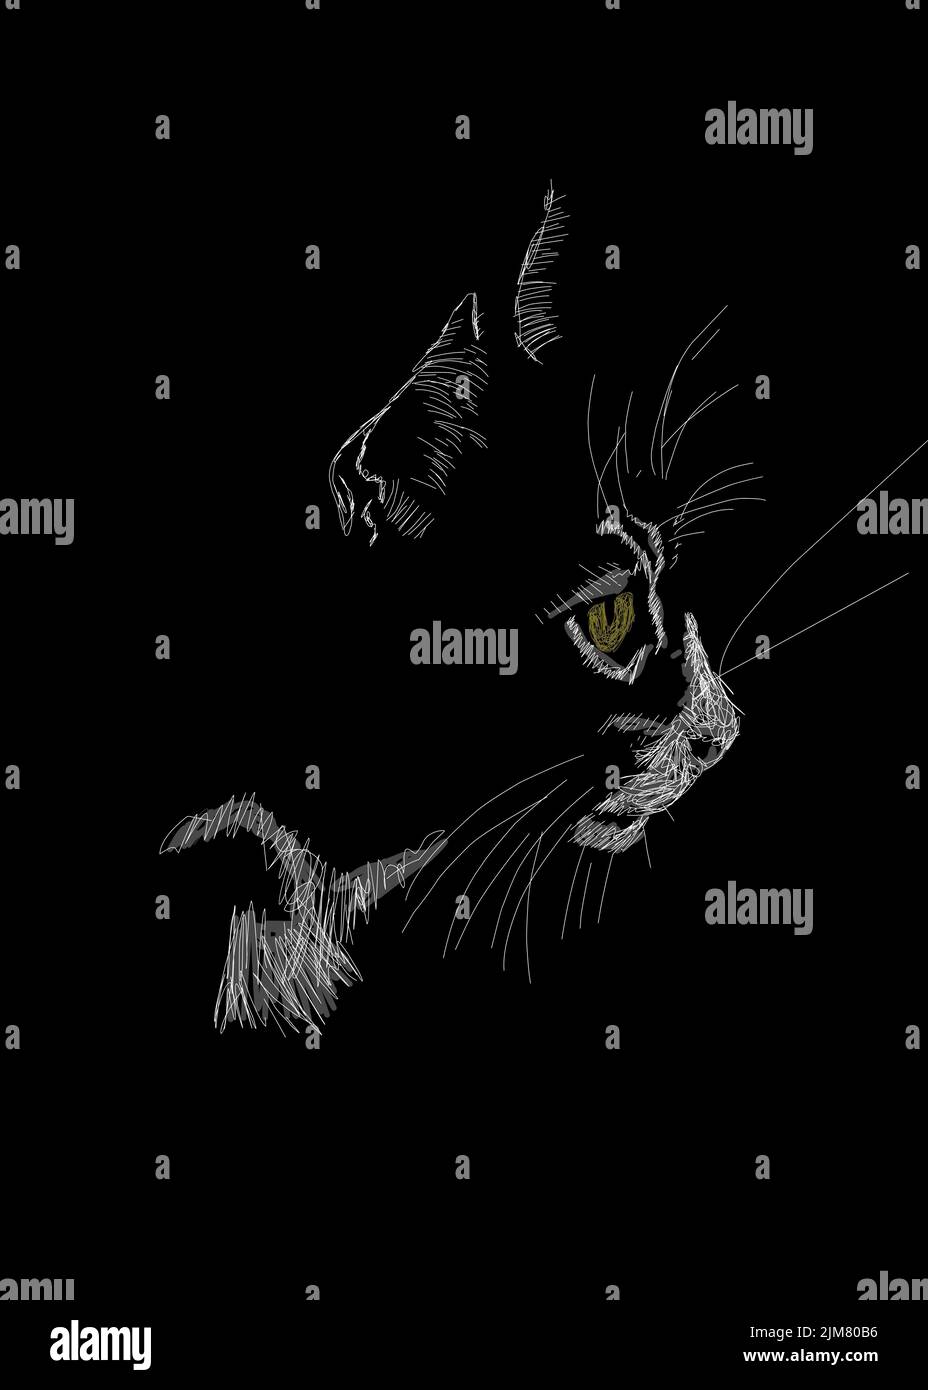 Dessin vertical en niveaux de gris d'un portrait de chat sur fond noir Banque D'Images